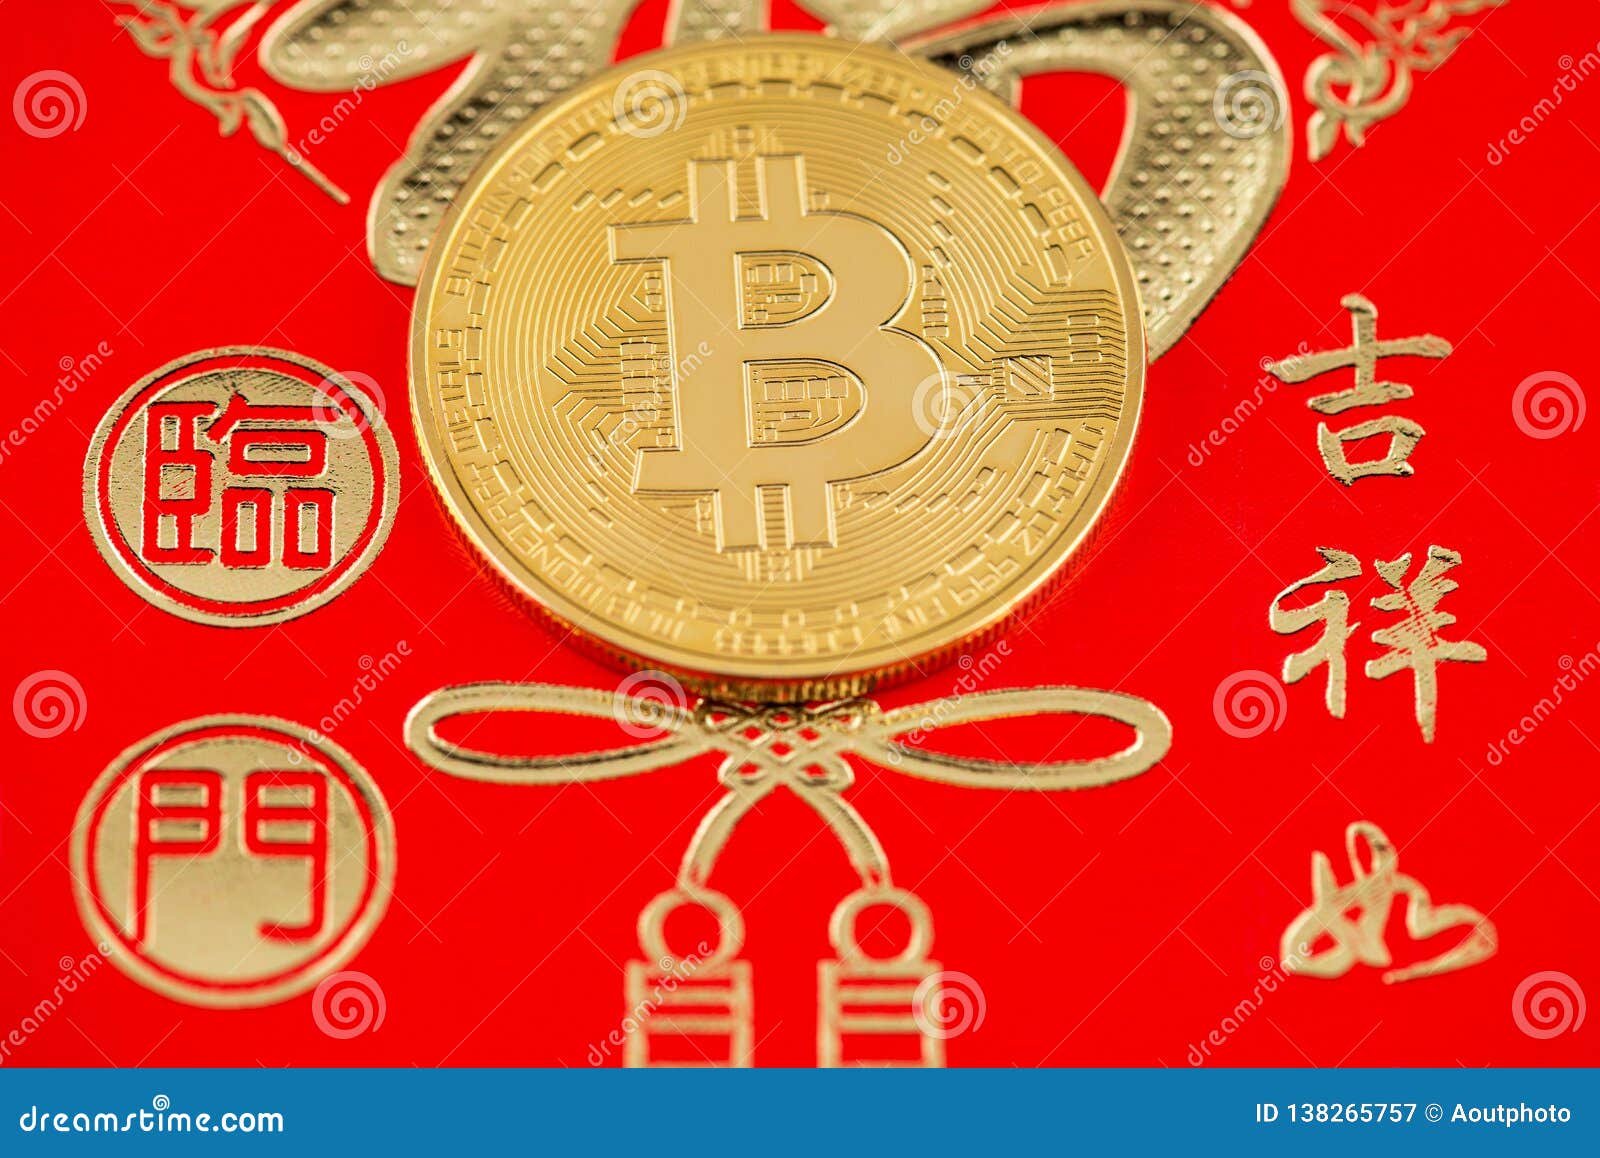 Chinese New Year 2022 Bitcoin